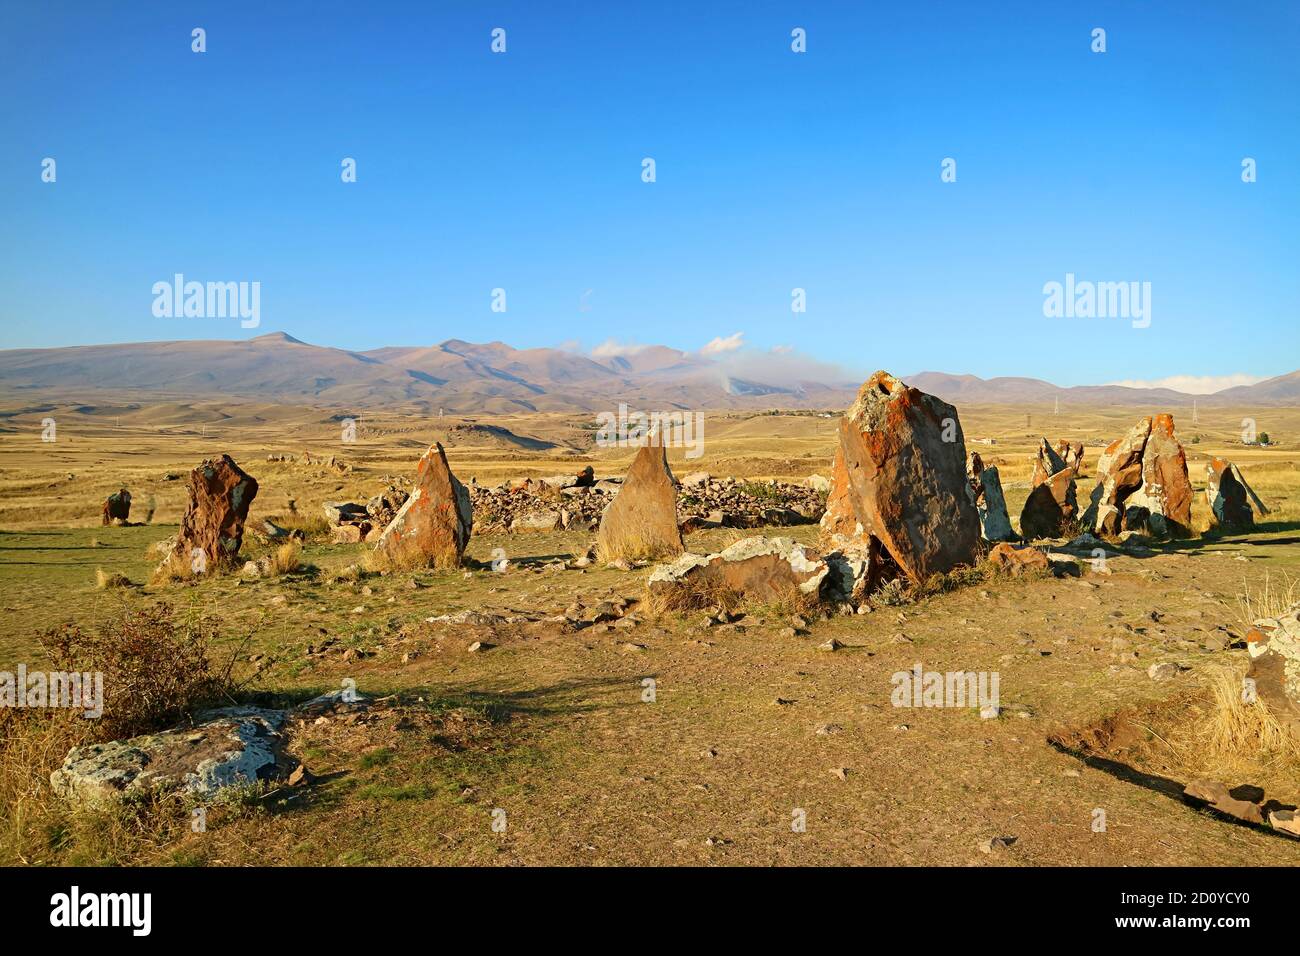 Le cercle central de Carahunge, également appelé Stonehenge arménien, site archéologique préhistorique dans la province de Syunik en Arménie Banque D'Images